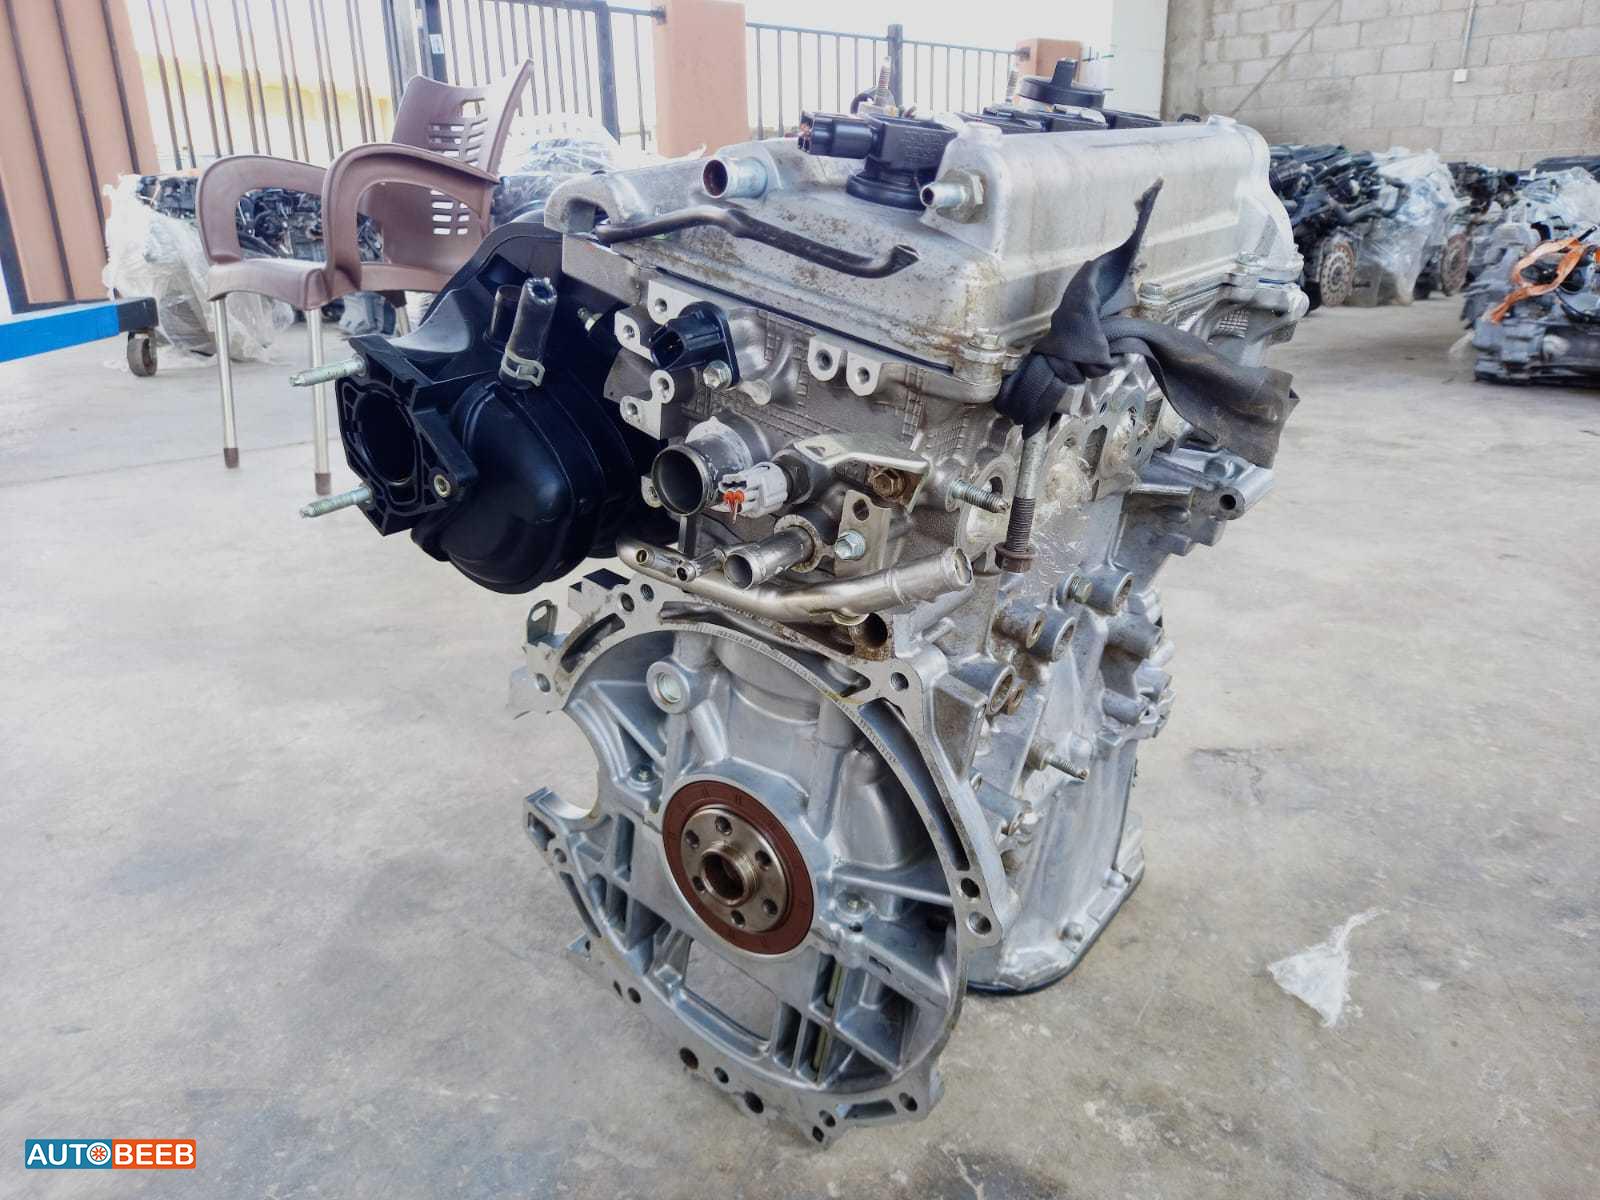 Toyota Yaris 2014 Engine - محرك تويوتا ياريس 2014